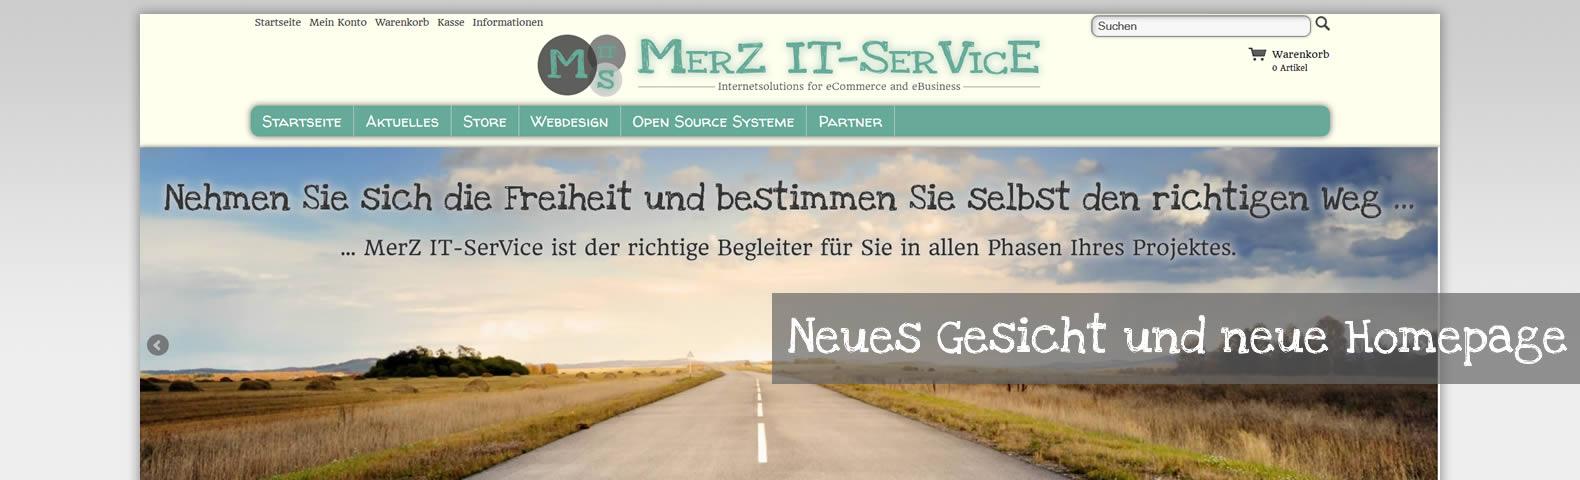 MerZ IT-SerVice mit neuem Gesicht und Internetauftritt